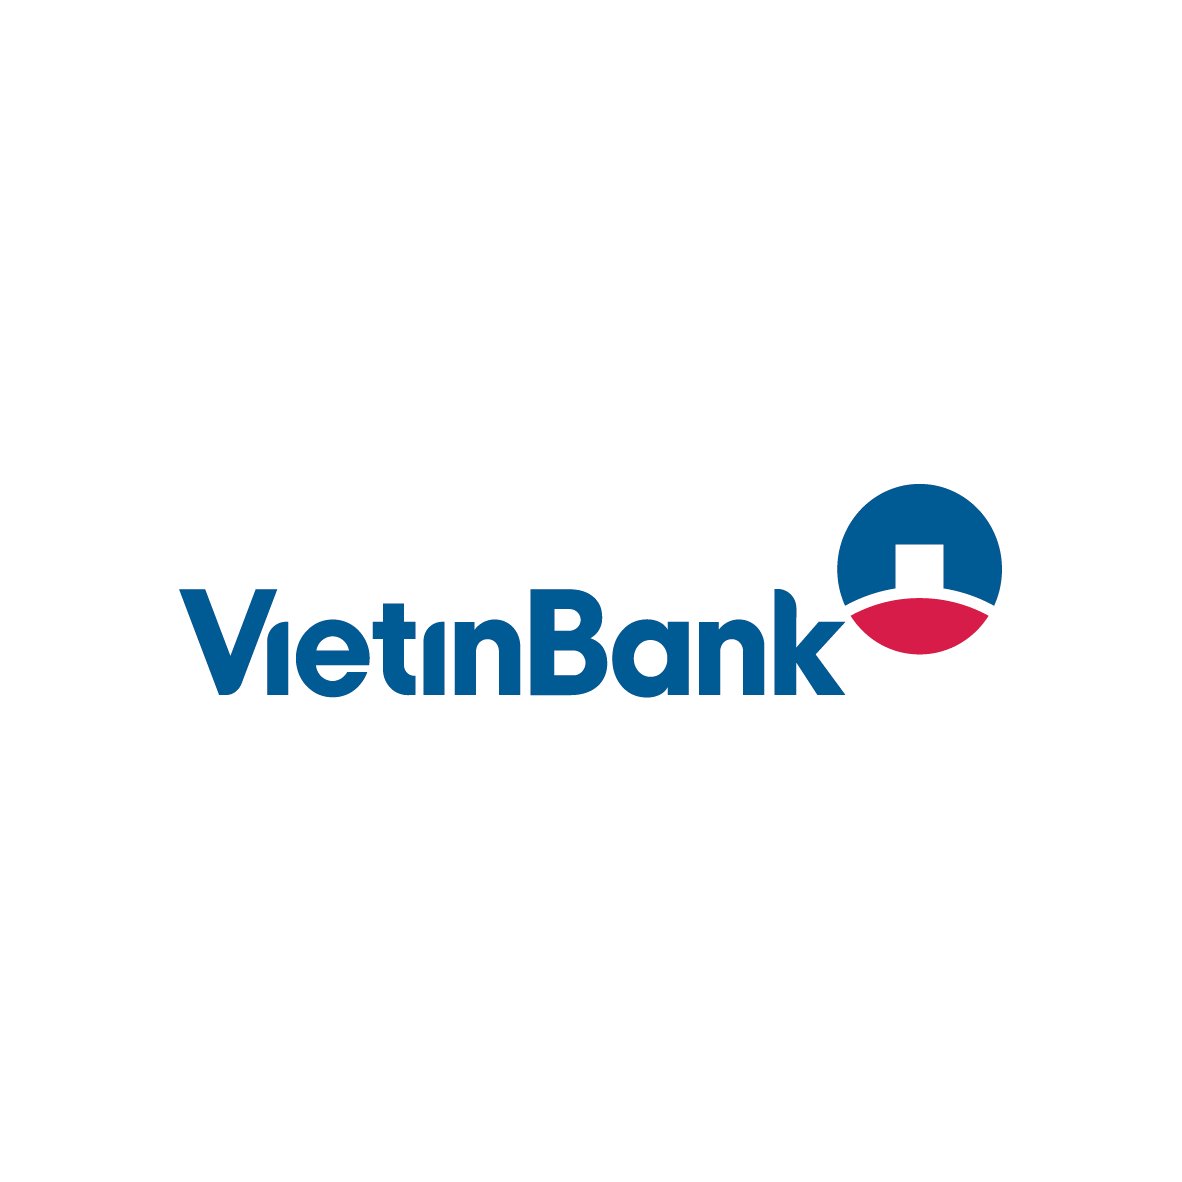 Lịch sử phát triển và ý nghĩa của logo Vietinbank là gì?